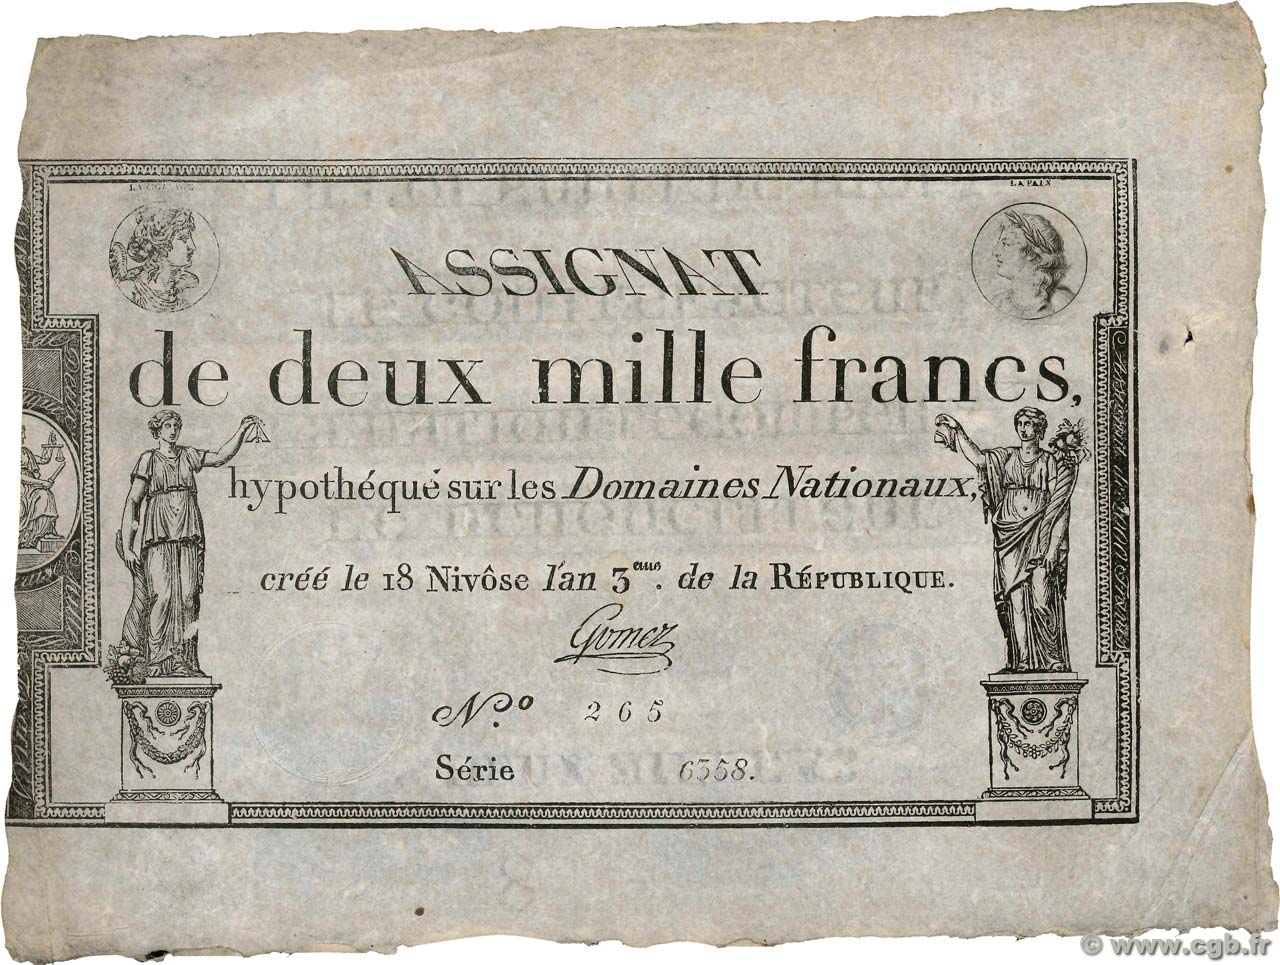 2000 Francs FRANKREICH  1795 Ass.51a fSS